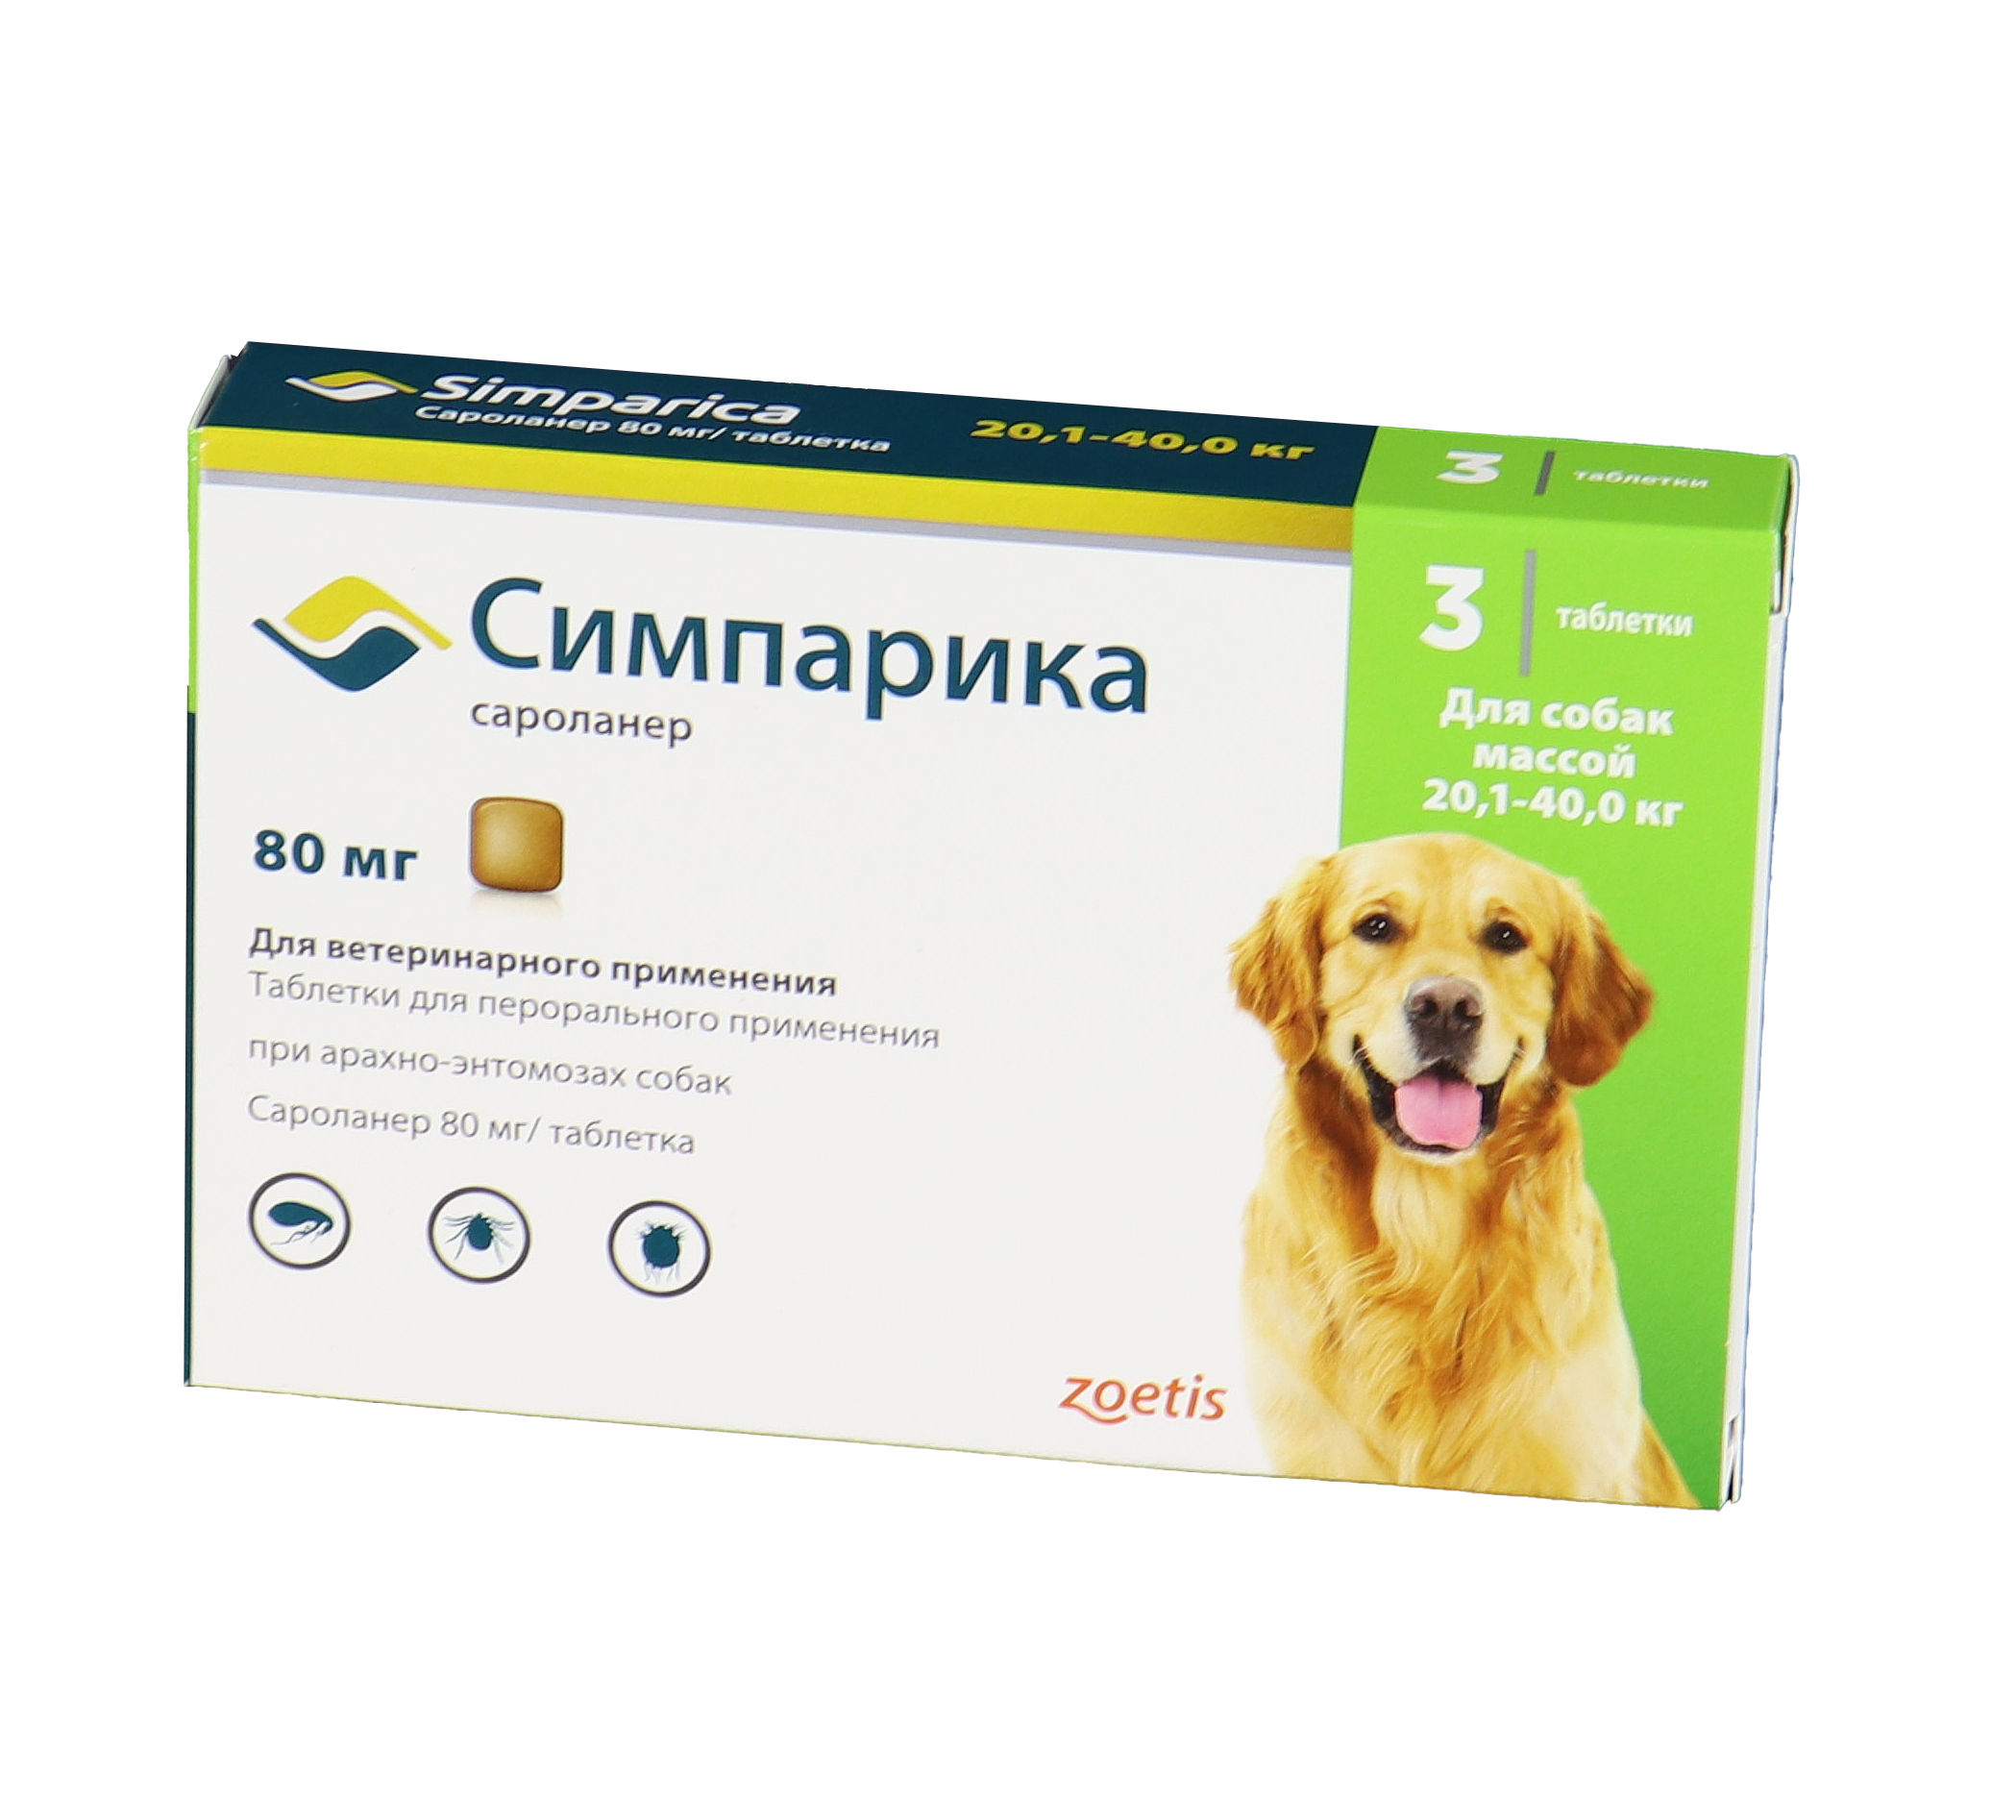 Пульсатилла пратенсис с6 (гранулы, 5 г, подъязычные) - цена, купить онлайн в москве, описание, заказать с доставкой в аптеку - все аптеки